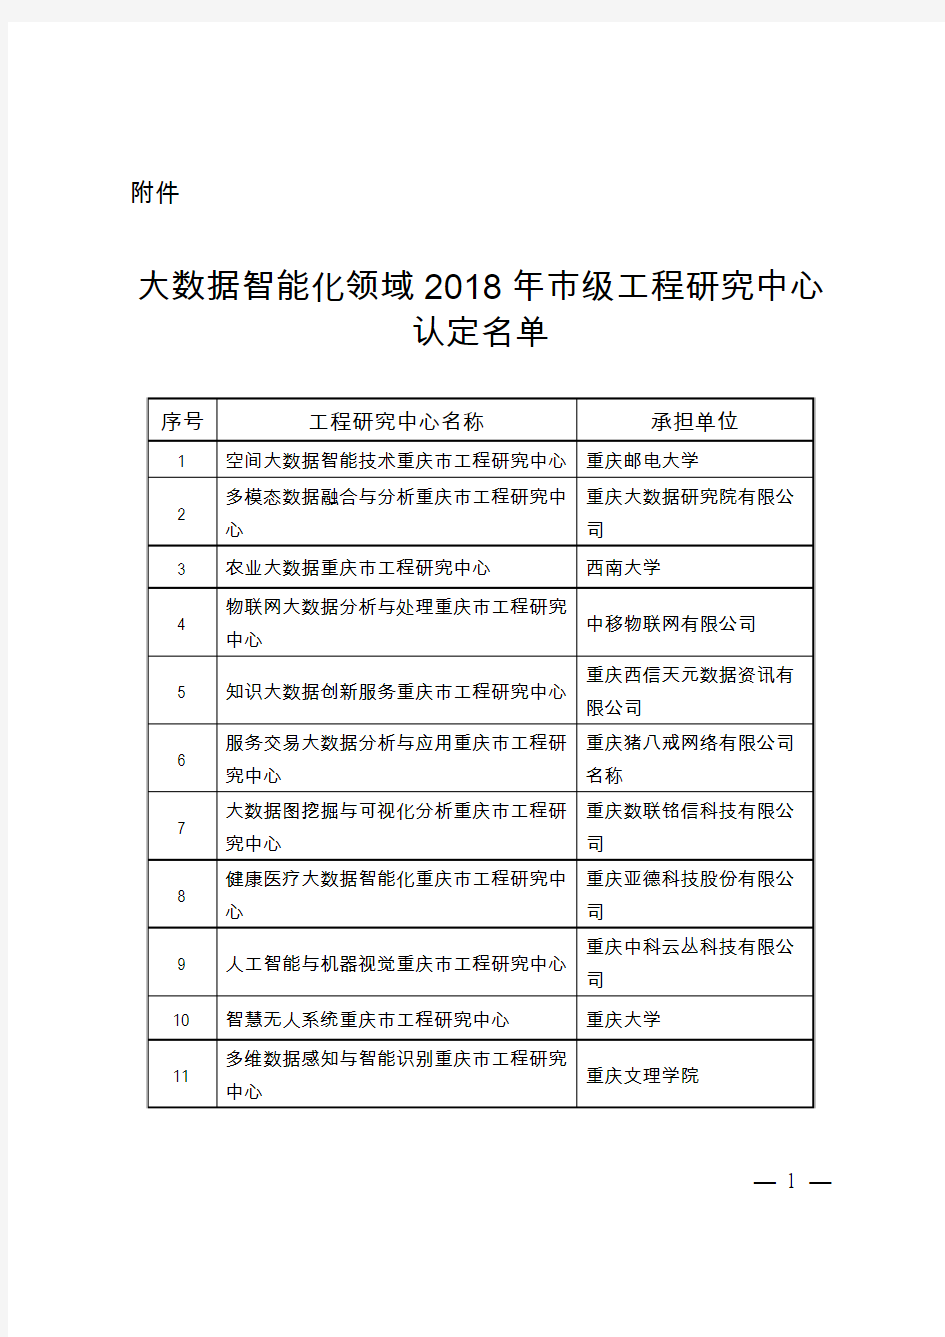 重庆市大数据智能化领域2018年市级工程研究中心认定名单